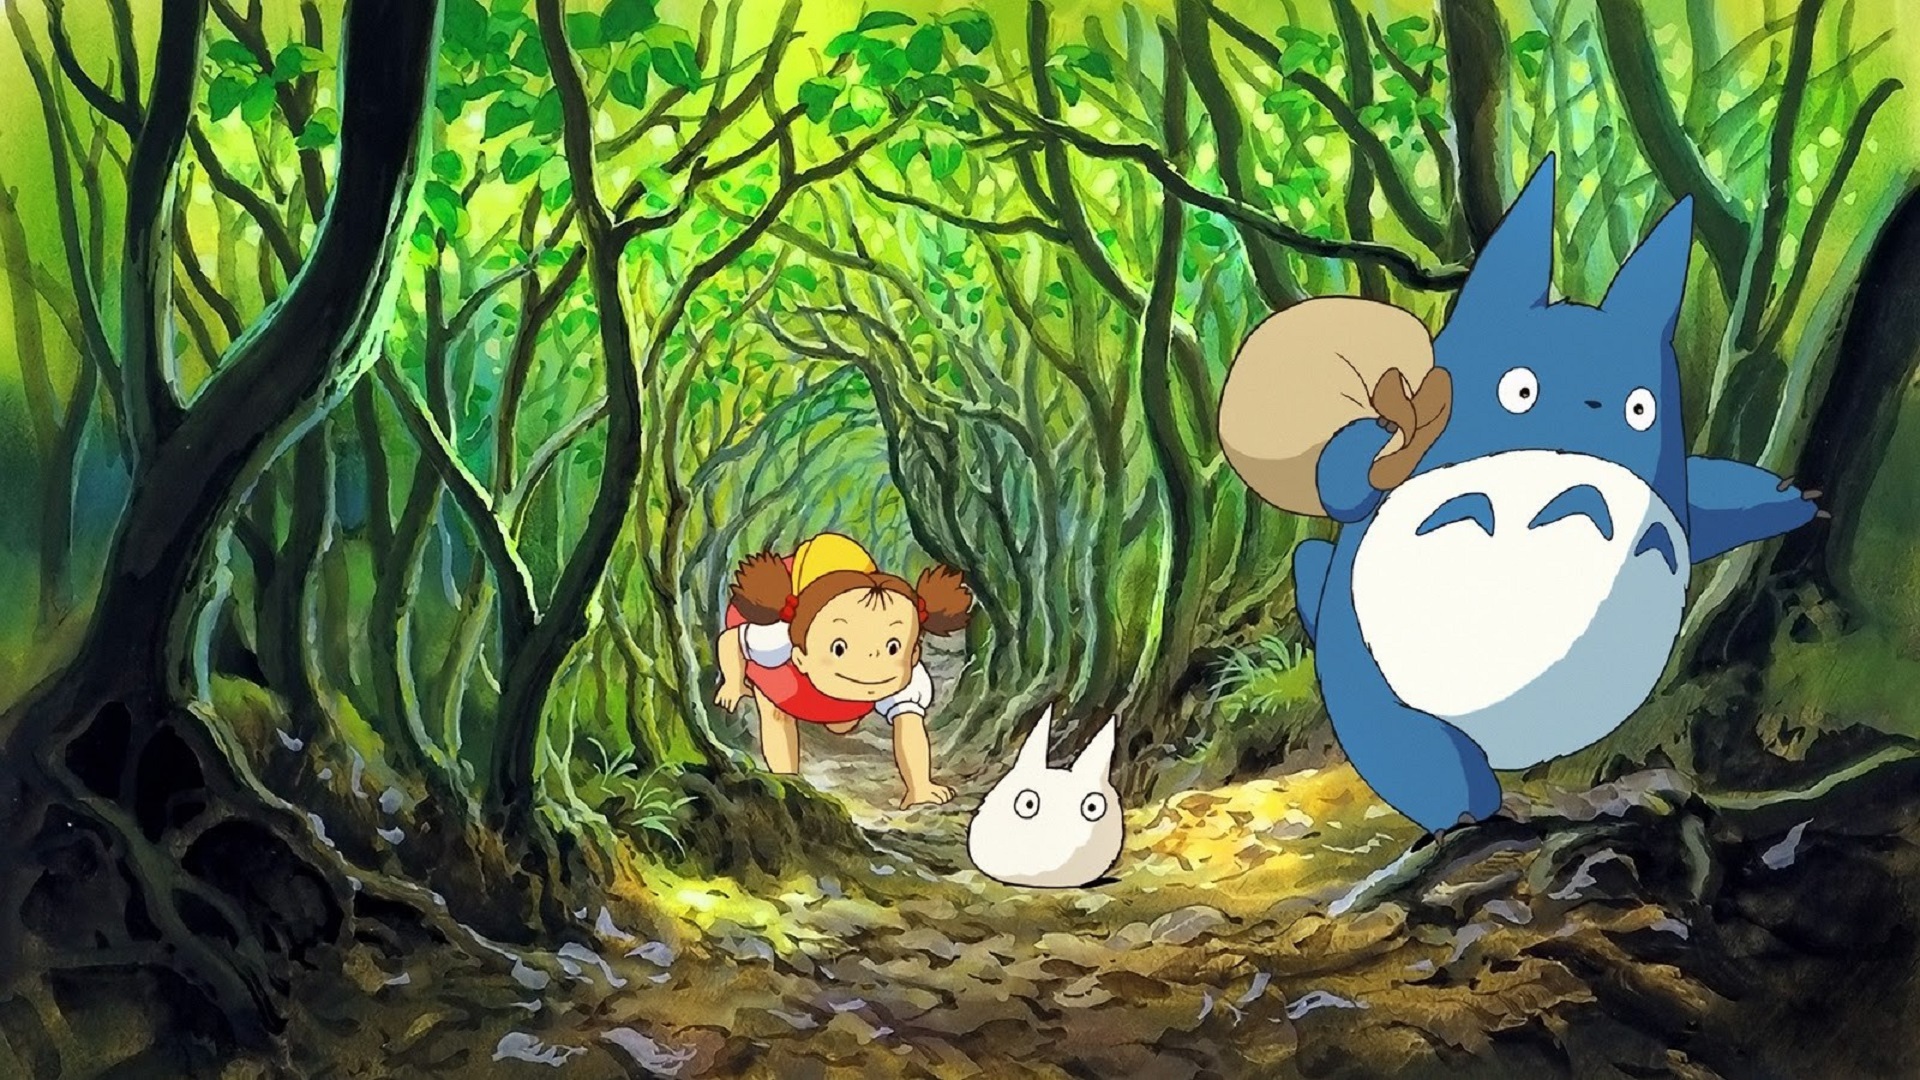 Kaonashi Ghibli Museum Studio Ghibli Hình nền máy tính My Neighbor Totoro bảo tàng mèo png png tải về Miễn phí trong suốt Phim Hoạt Hình png Tải về